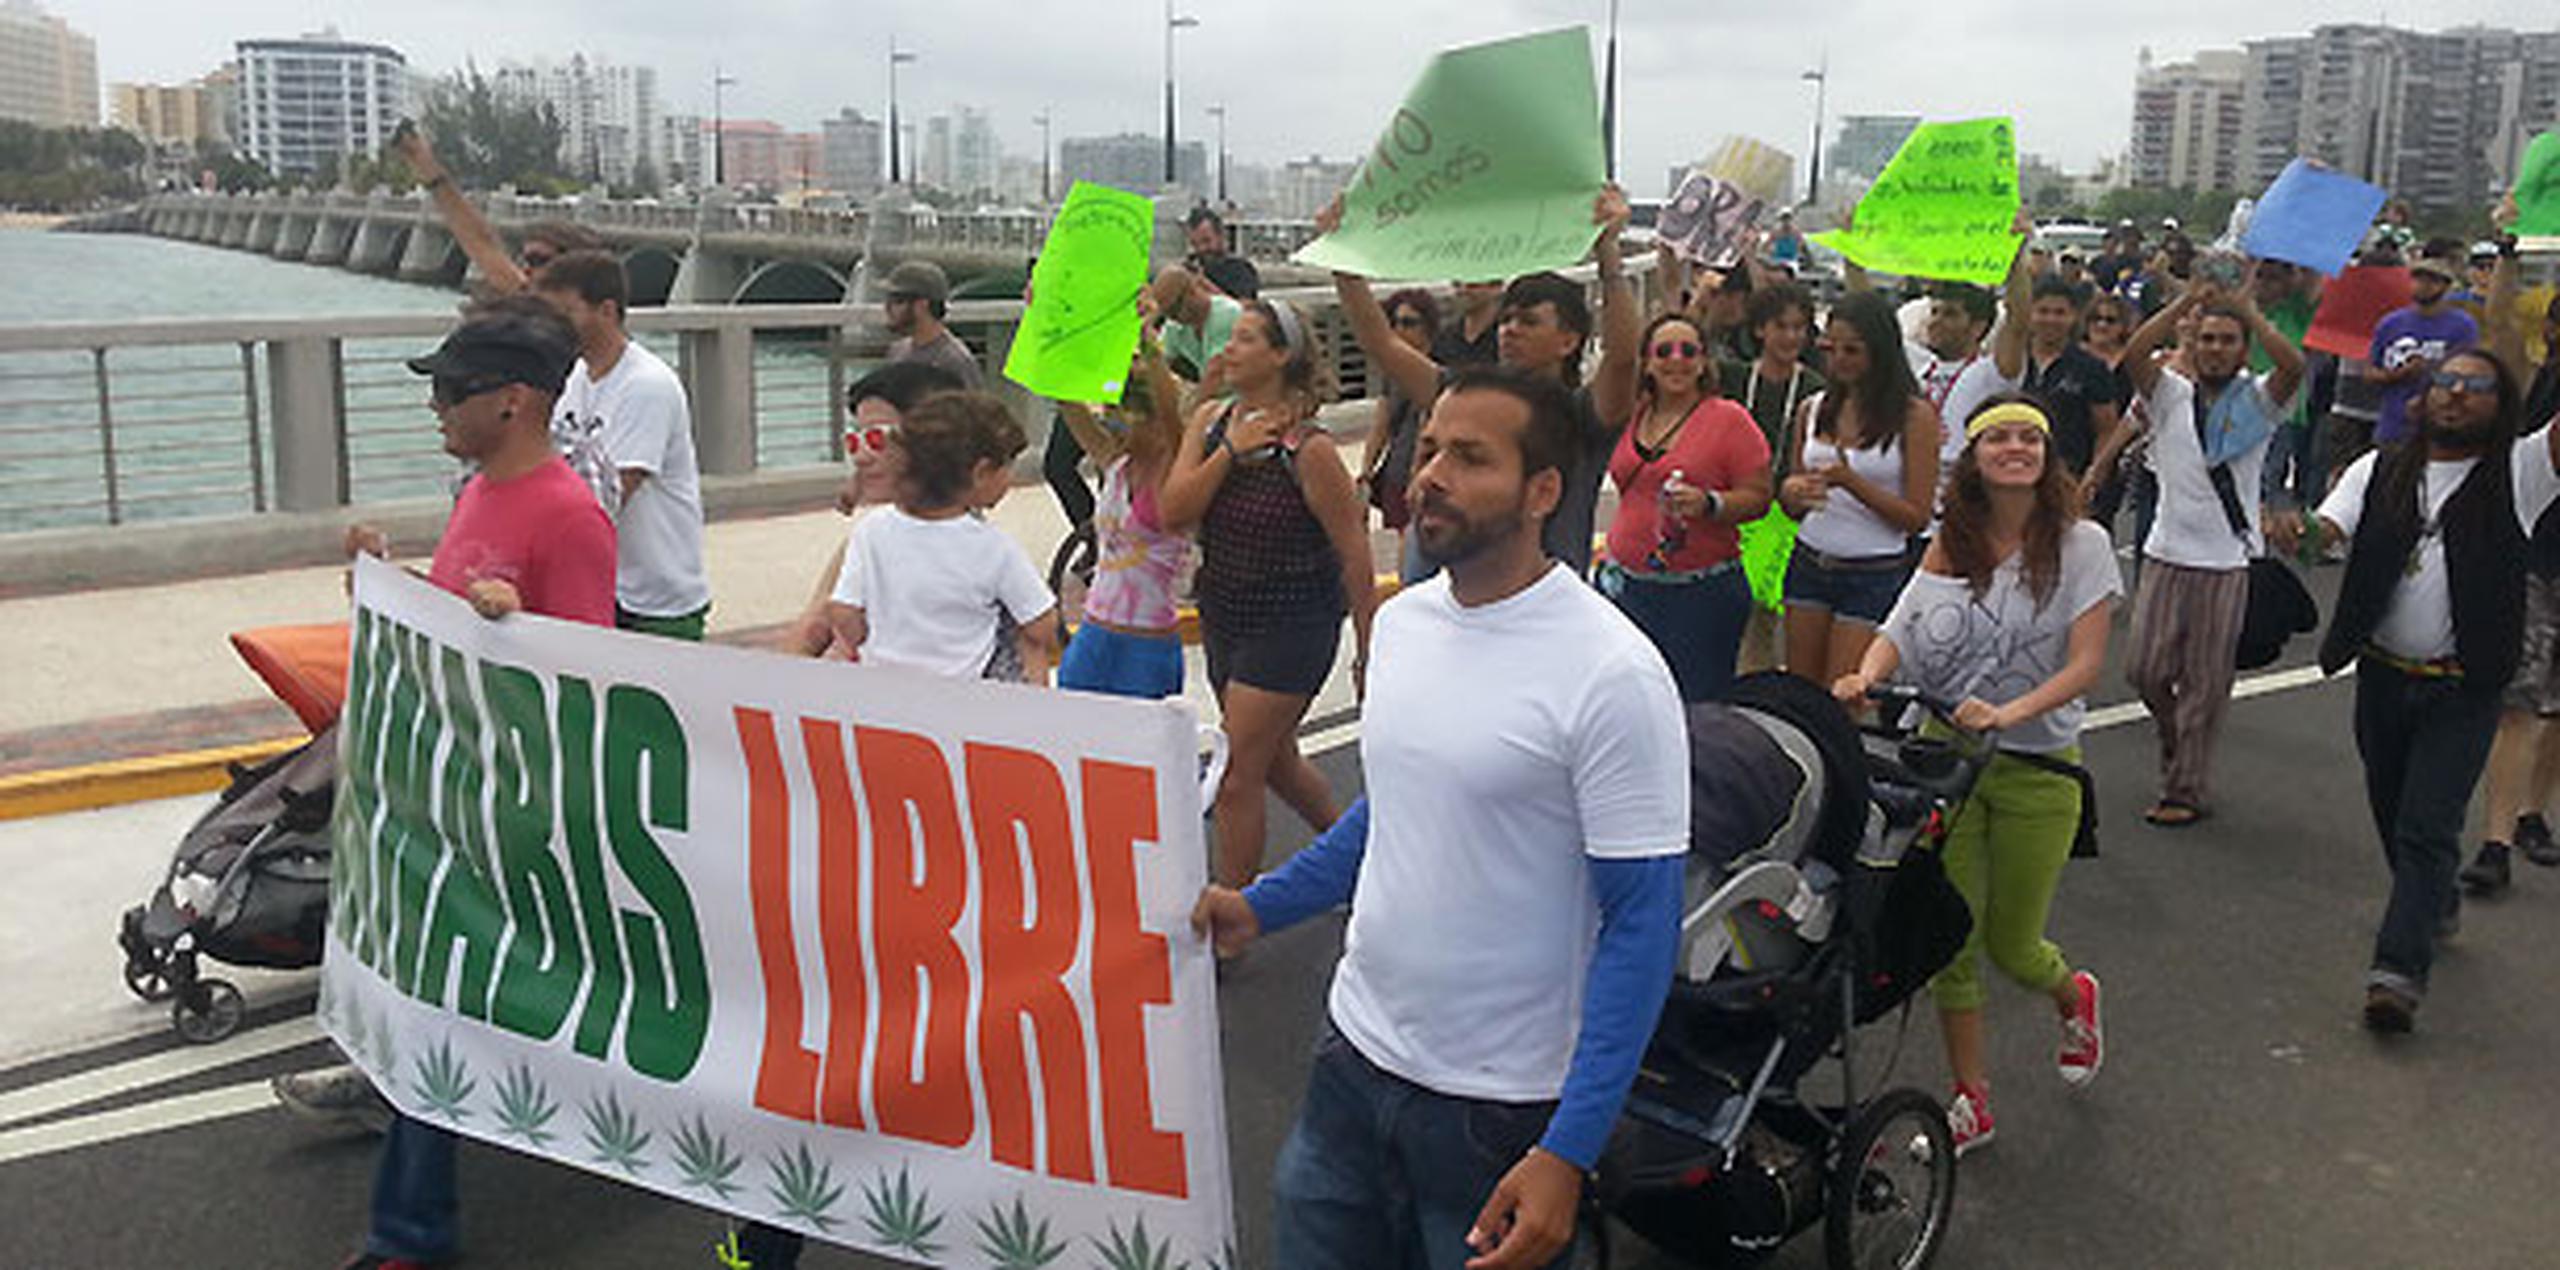 El grupo marchó desde el Parque del Indio en el Condado hasta la Casa de las Leyes en un ejercicio para crear conciencia de los beneficios del cannabis. (Foto: Jorge Ramírez Portela)